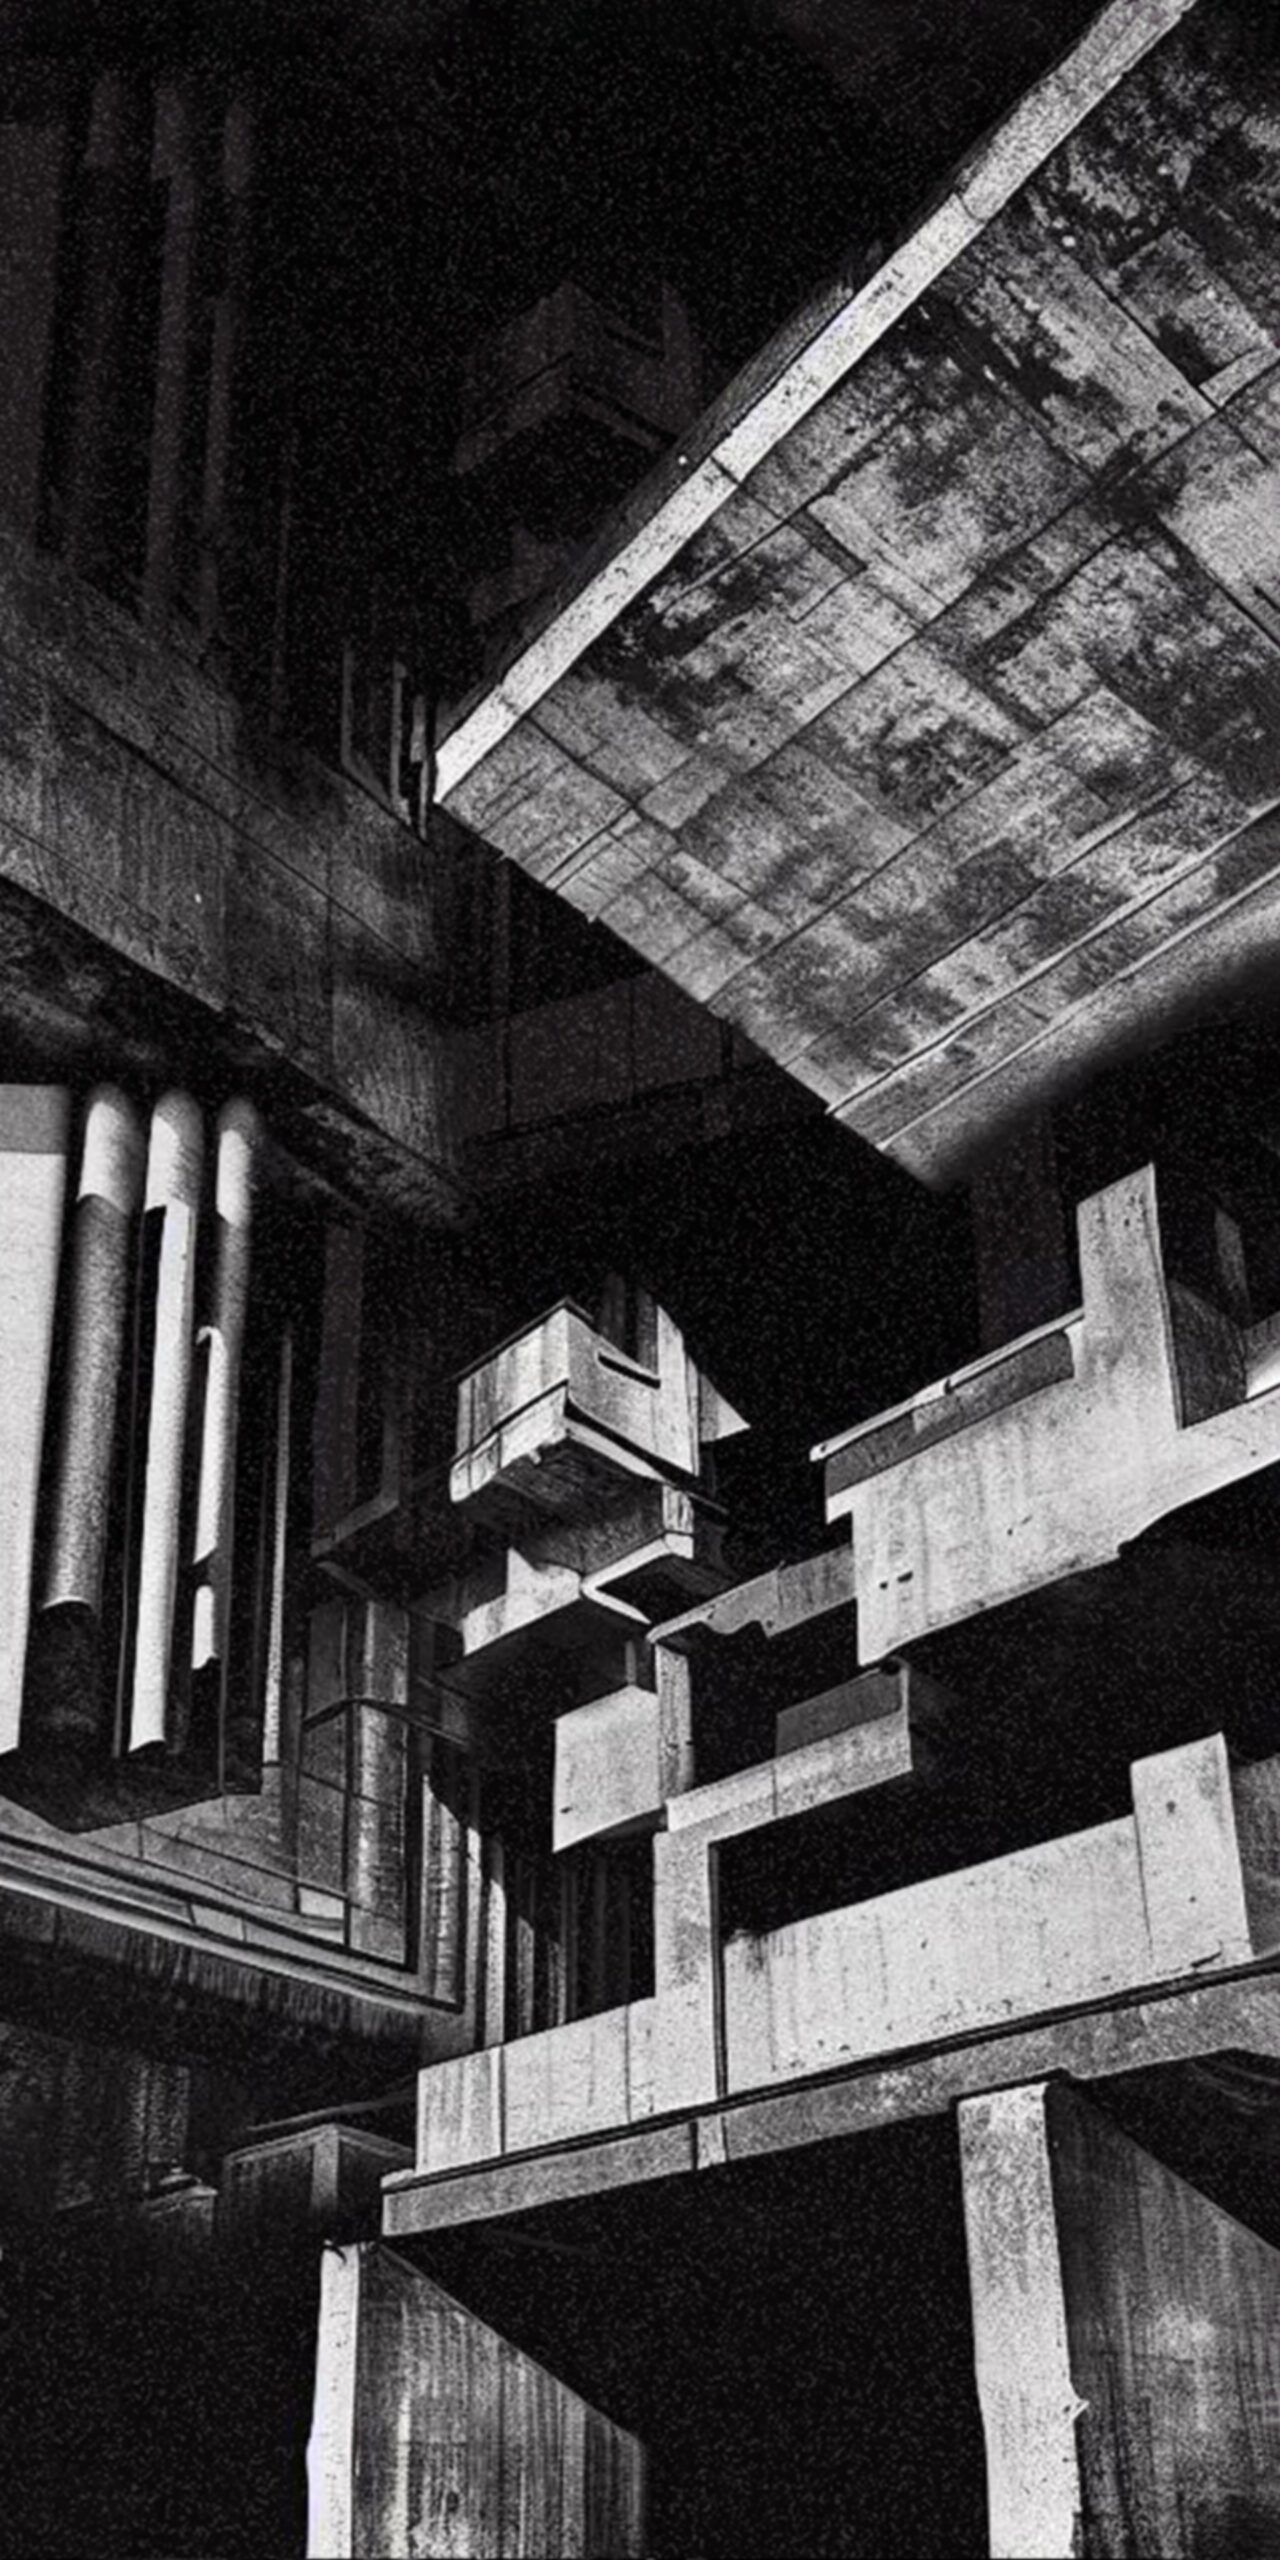 Zdjęcie przedstawiające czarno-białą kompozycję architektoniczną wykonaną w technice druku cyfrowego